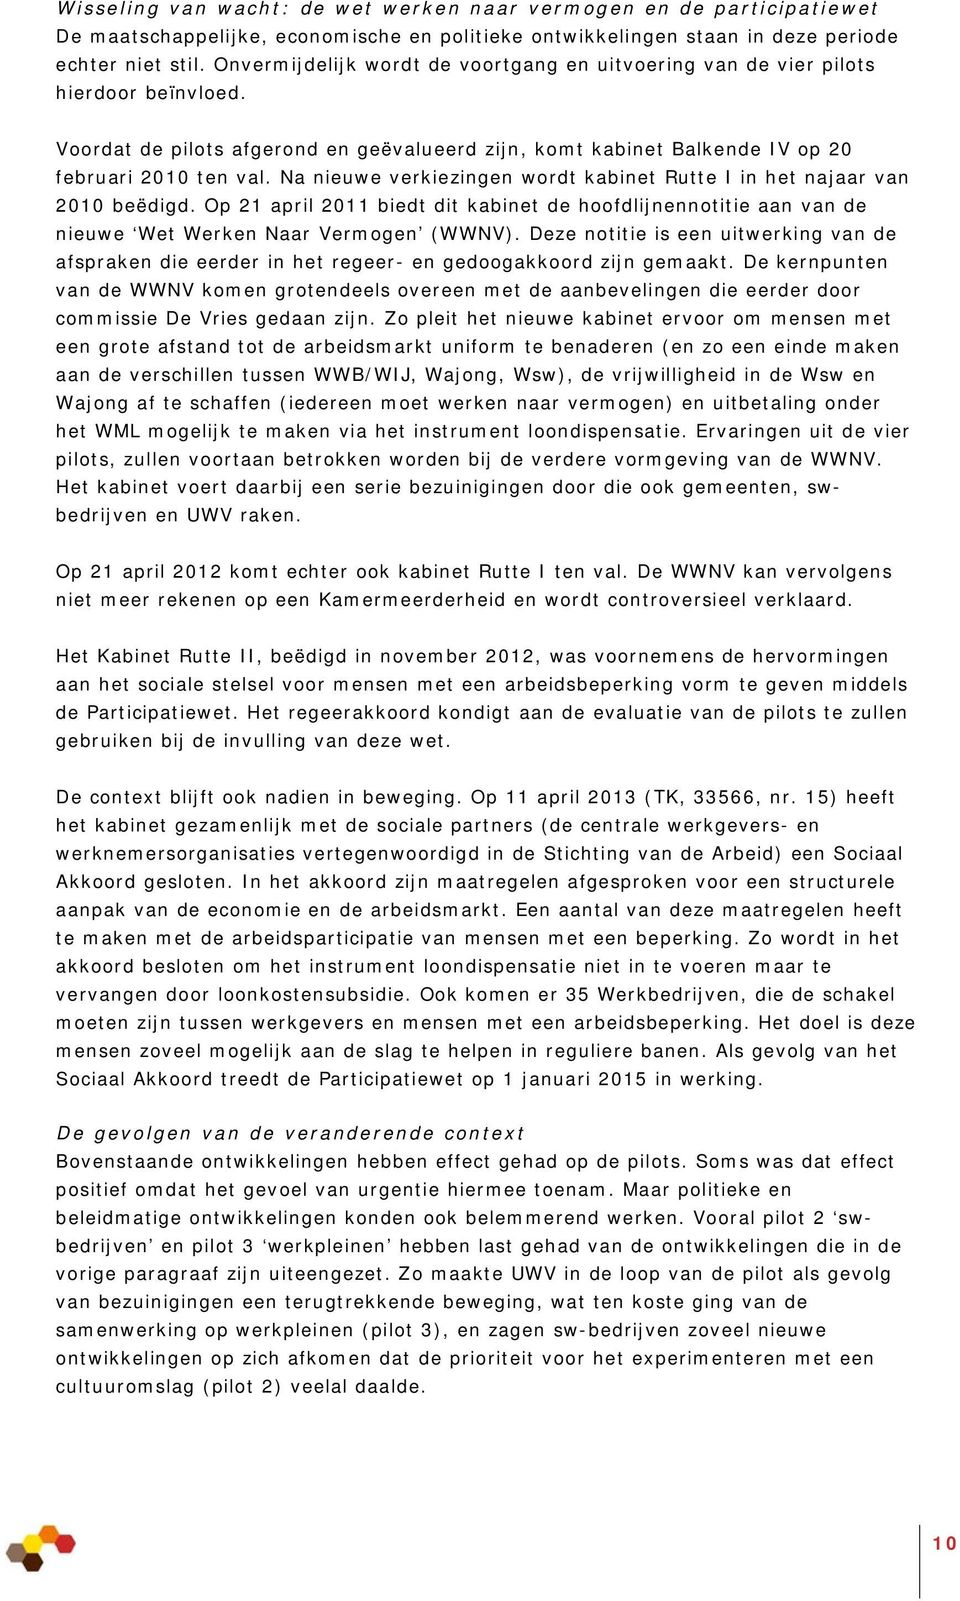 Na nieuwe verkiezingen wordt kabinet Rutte I in het najaar van 2010 beëdigd. Op 21 april 2011 biedt dit kabinet de hoofdlijnennotitie aan van de nieuwe Wet Werken Naar Vermogen (WWNV).